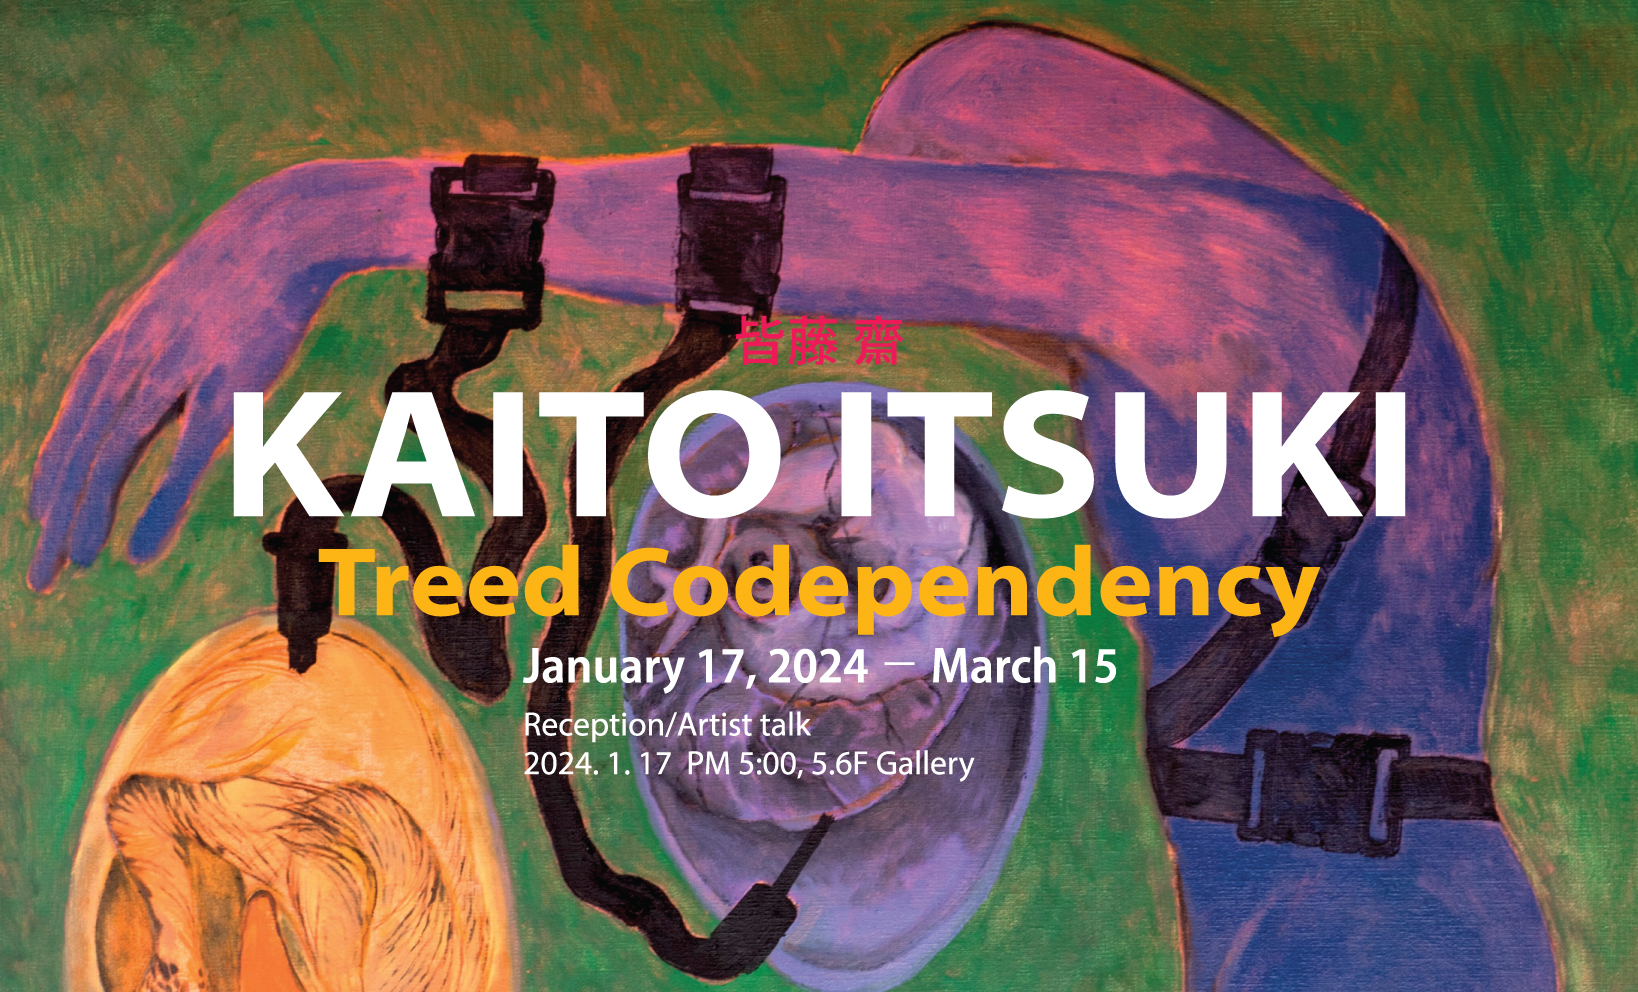 Kaito Itsuki, Treed Codependency